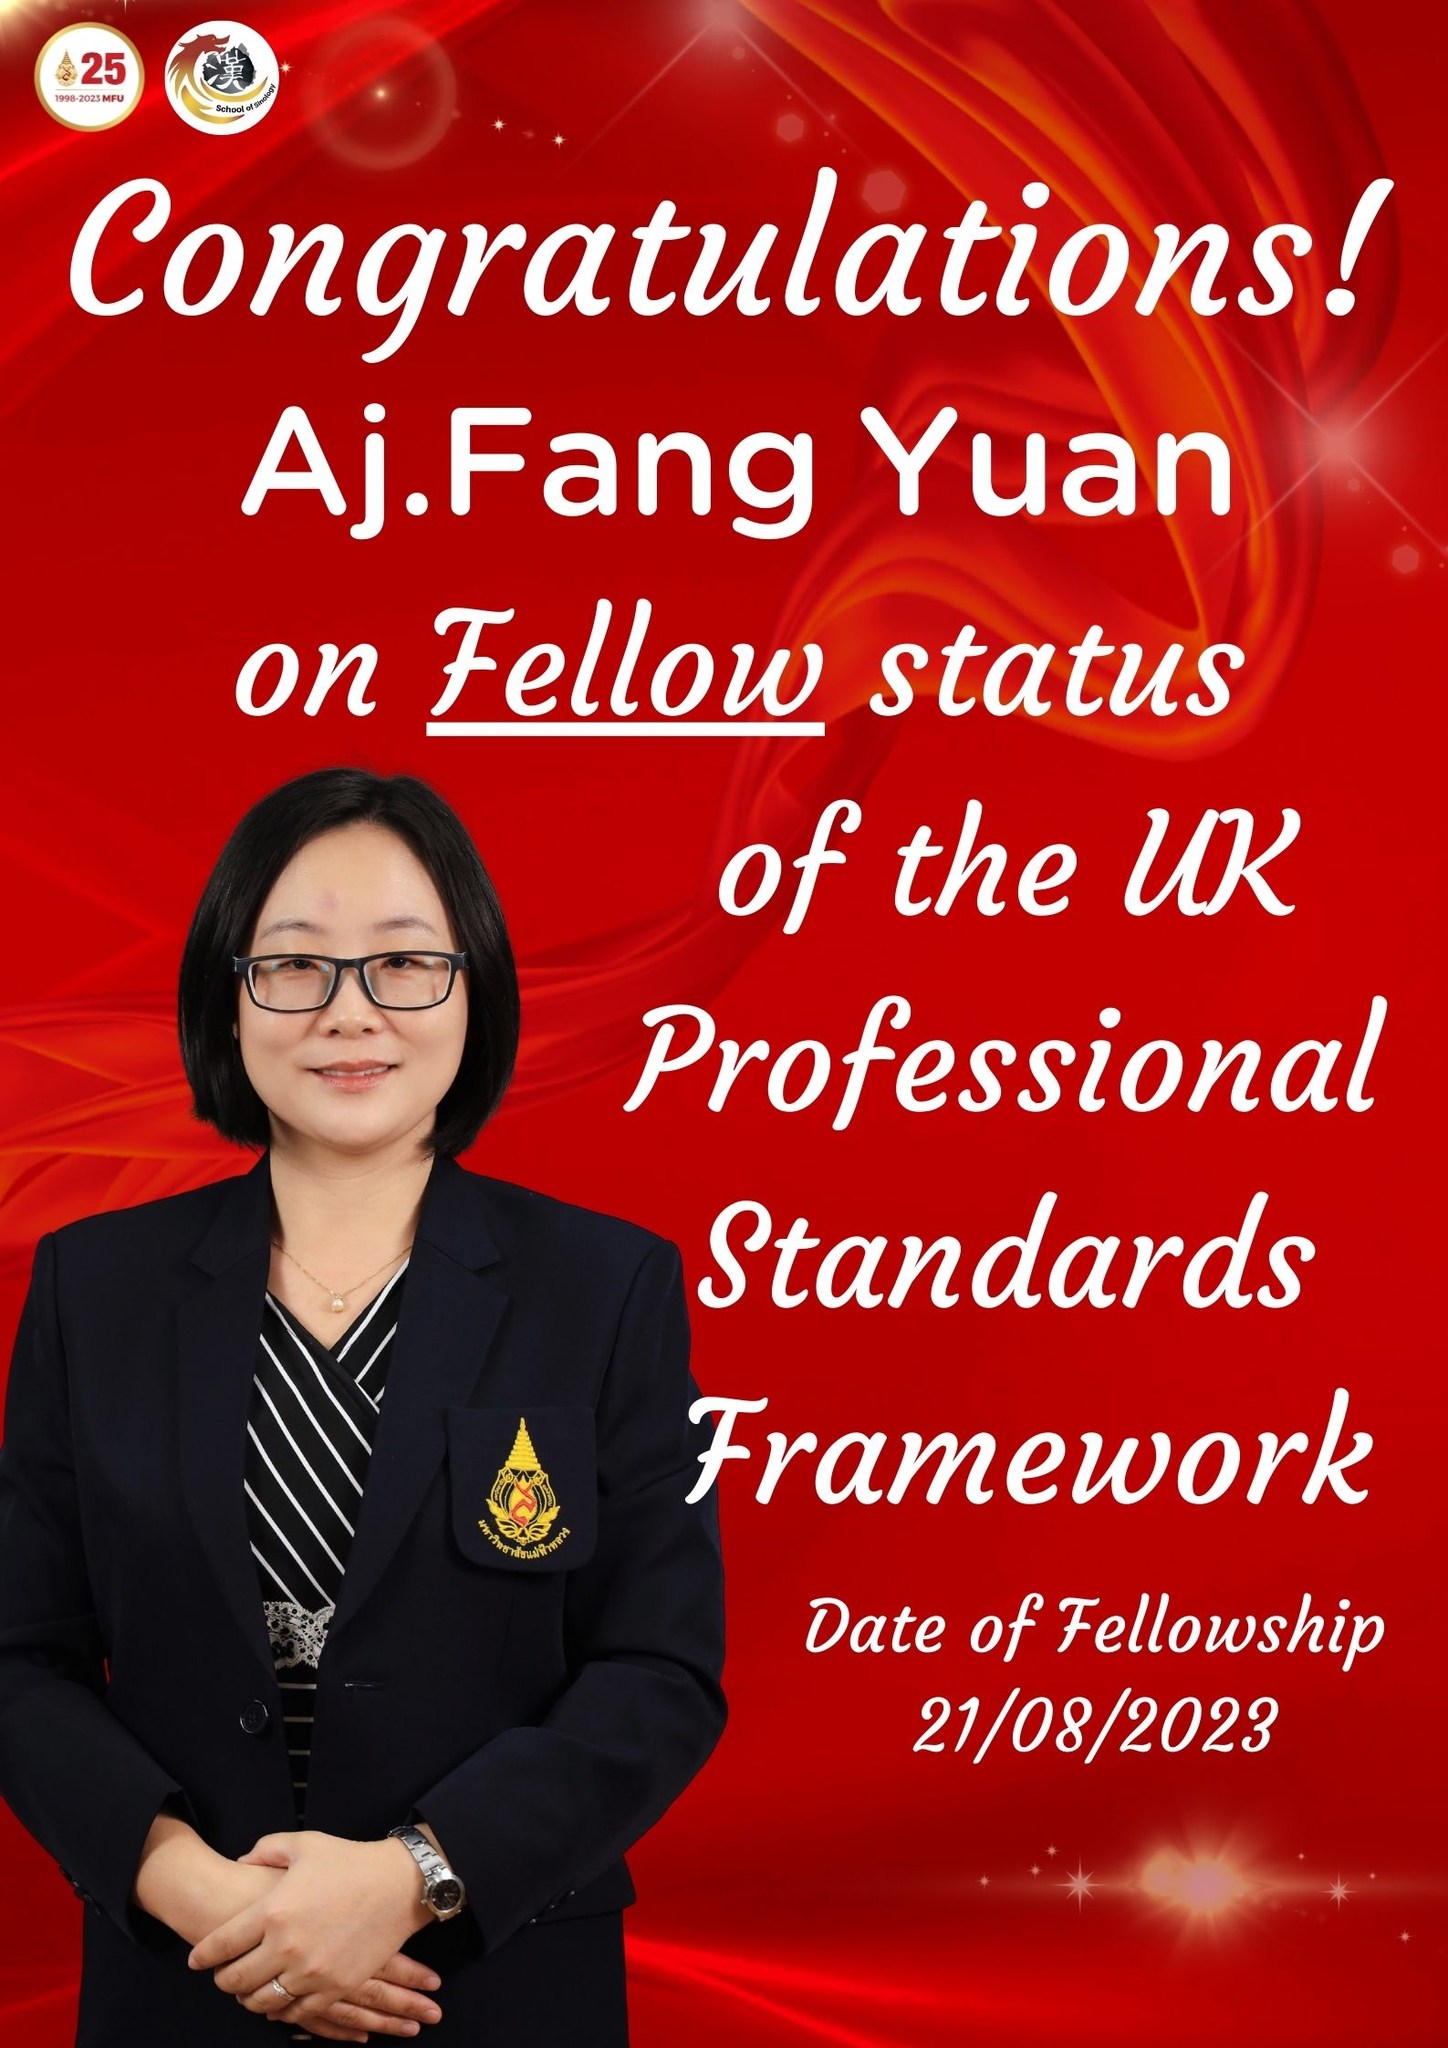 อาจารย์ Fang Yuan ได้รับการรับรองคุณภาพด้านการจัดการเรียนการสอน ตามกรอบมาตรฐานวิชาชีพของสหราชอาณาจักร (UK PSF)